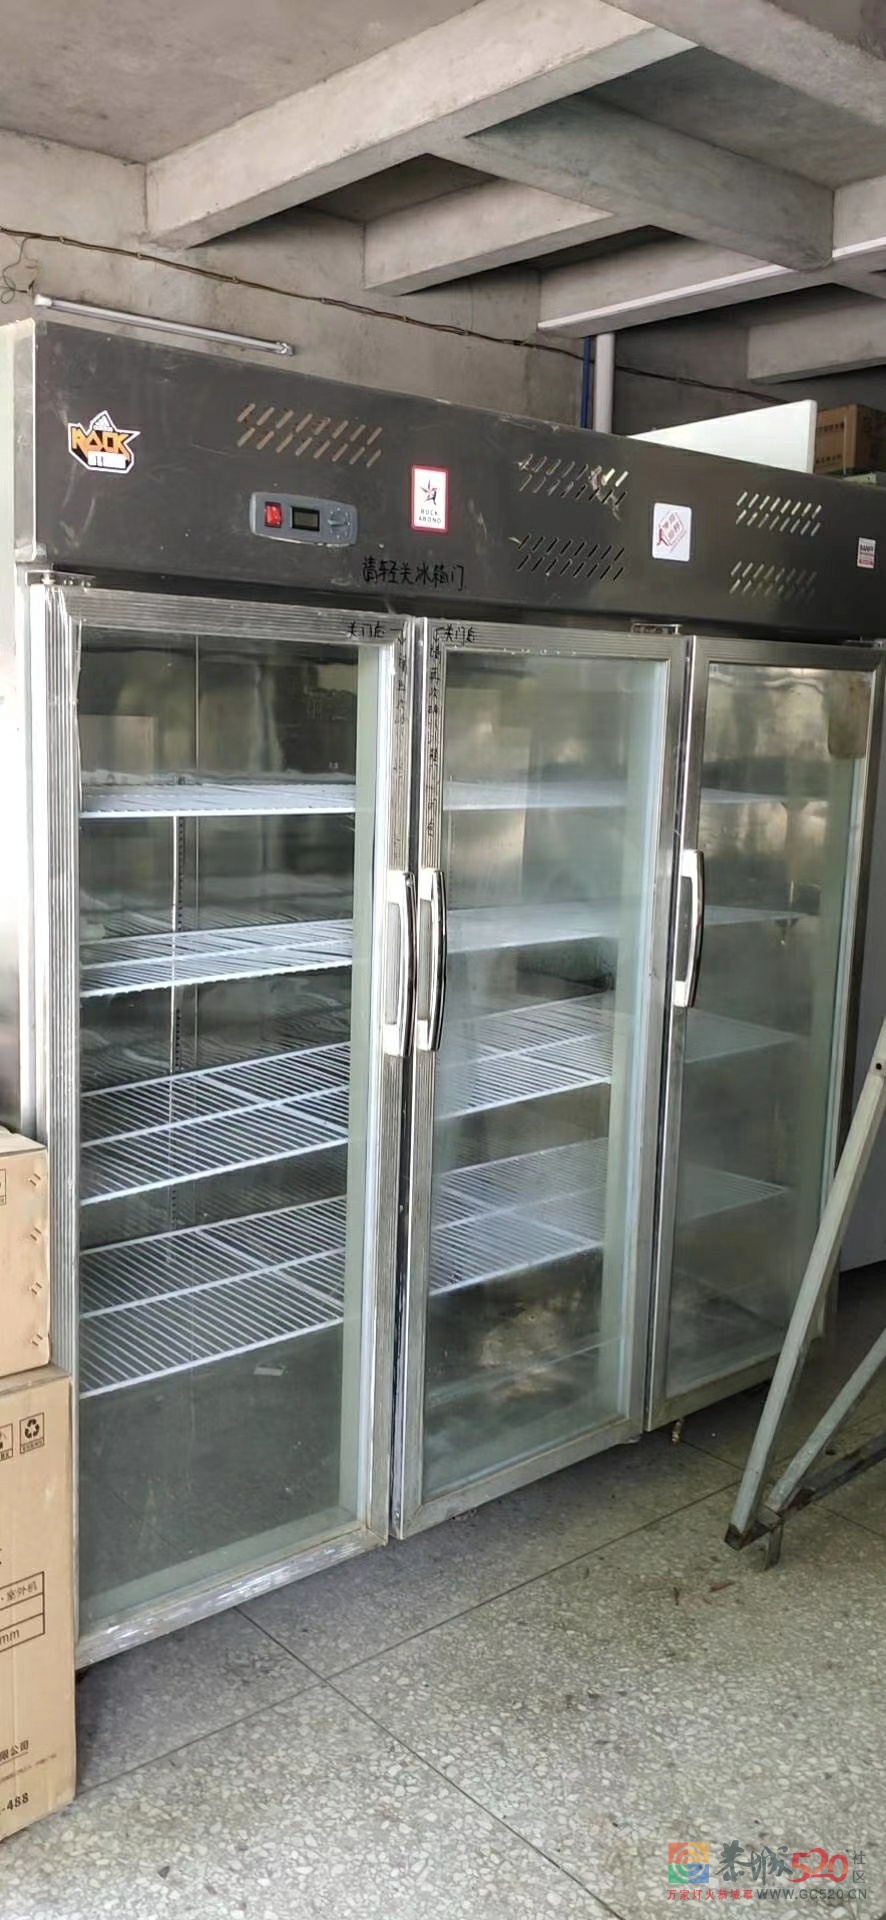 长期高价回收各种饭店食堂大排挡厨具设备冰箱空调及杂件681 / 作者:阿文89 / 帖子ID:277702